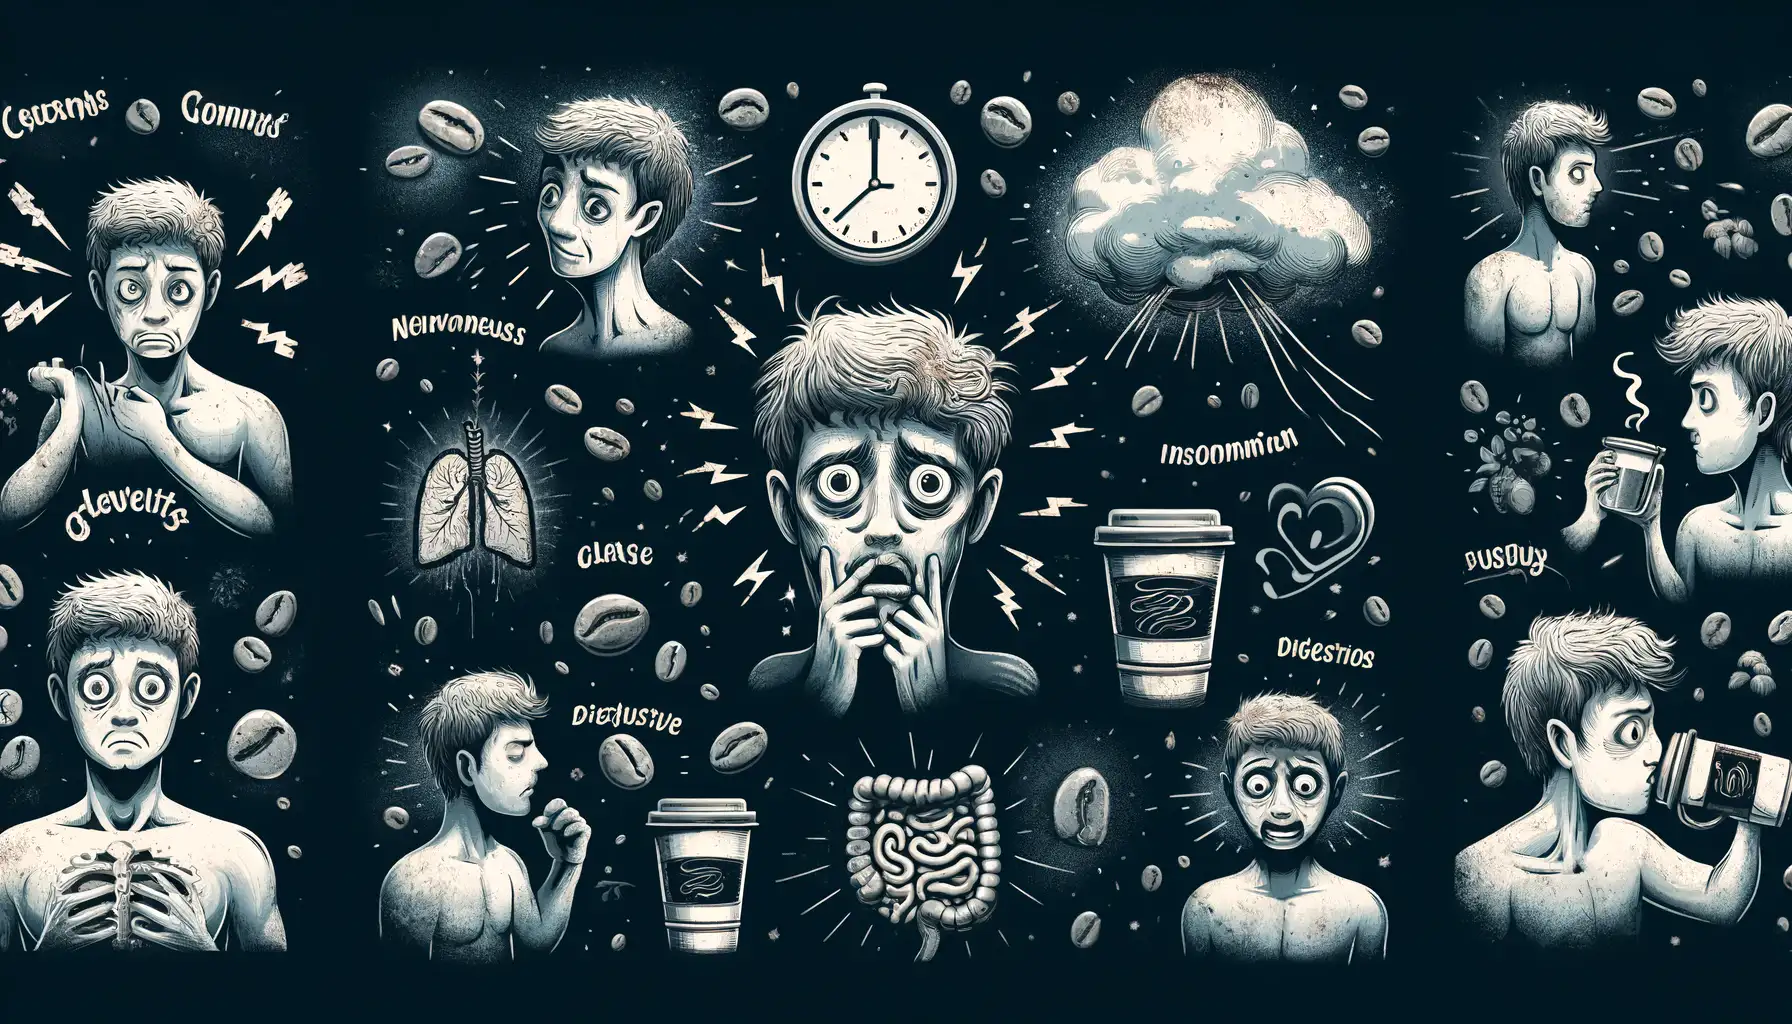 efek samping kelebihan kopi